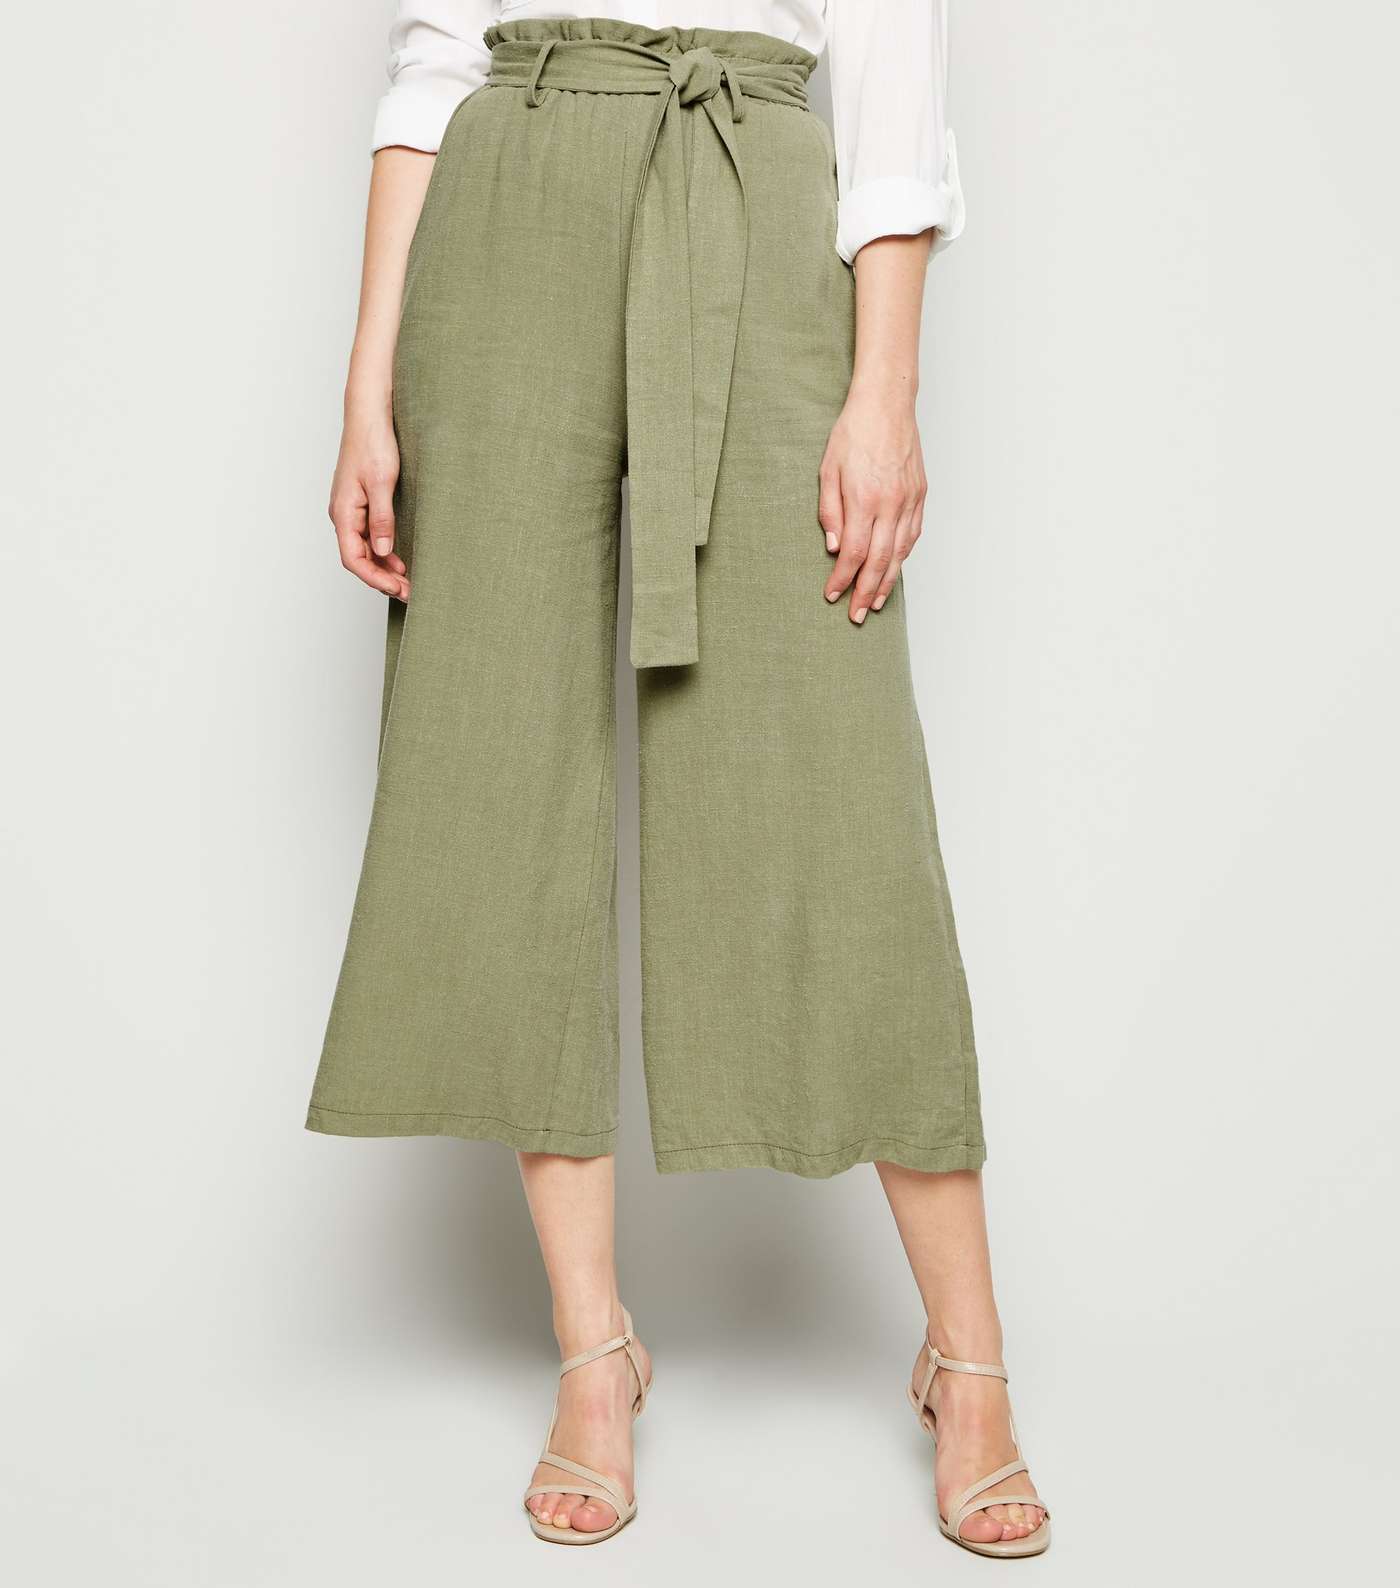 Khaki Linen Look High Waist Crop Trousers Image 3